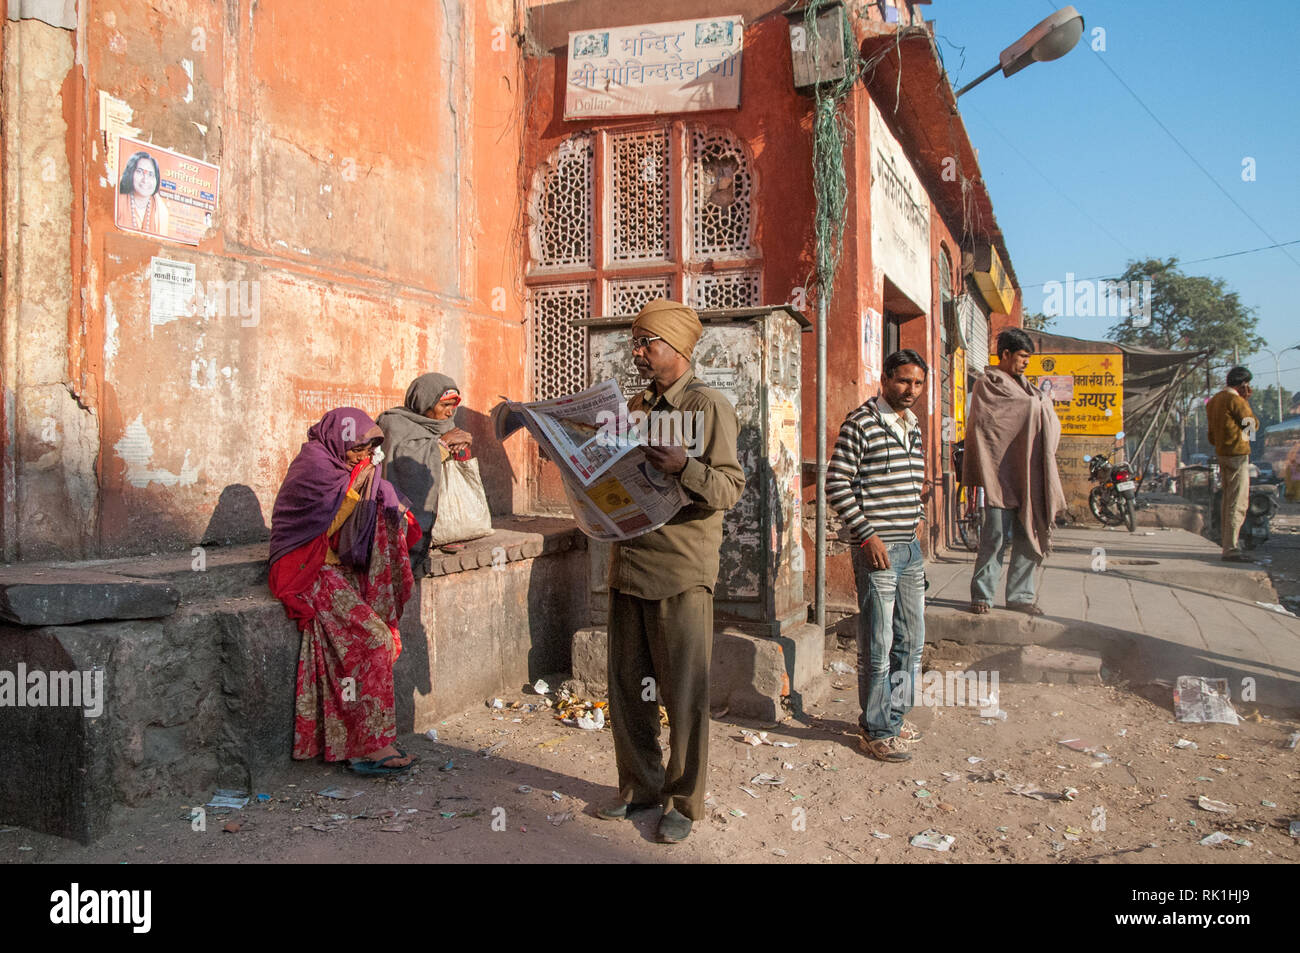 Scena urbana da Jaipur nel Rajasthan, India. Jaipur è la città più grande del Rajasthan con una popolazione di 3-4 milioni di euro. Foto Stock